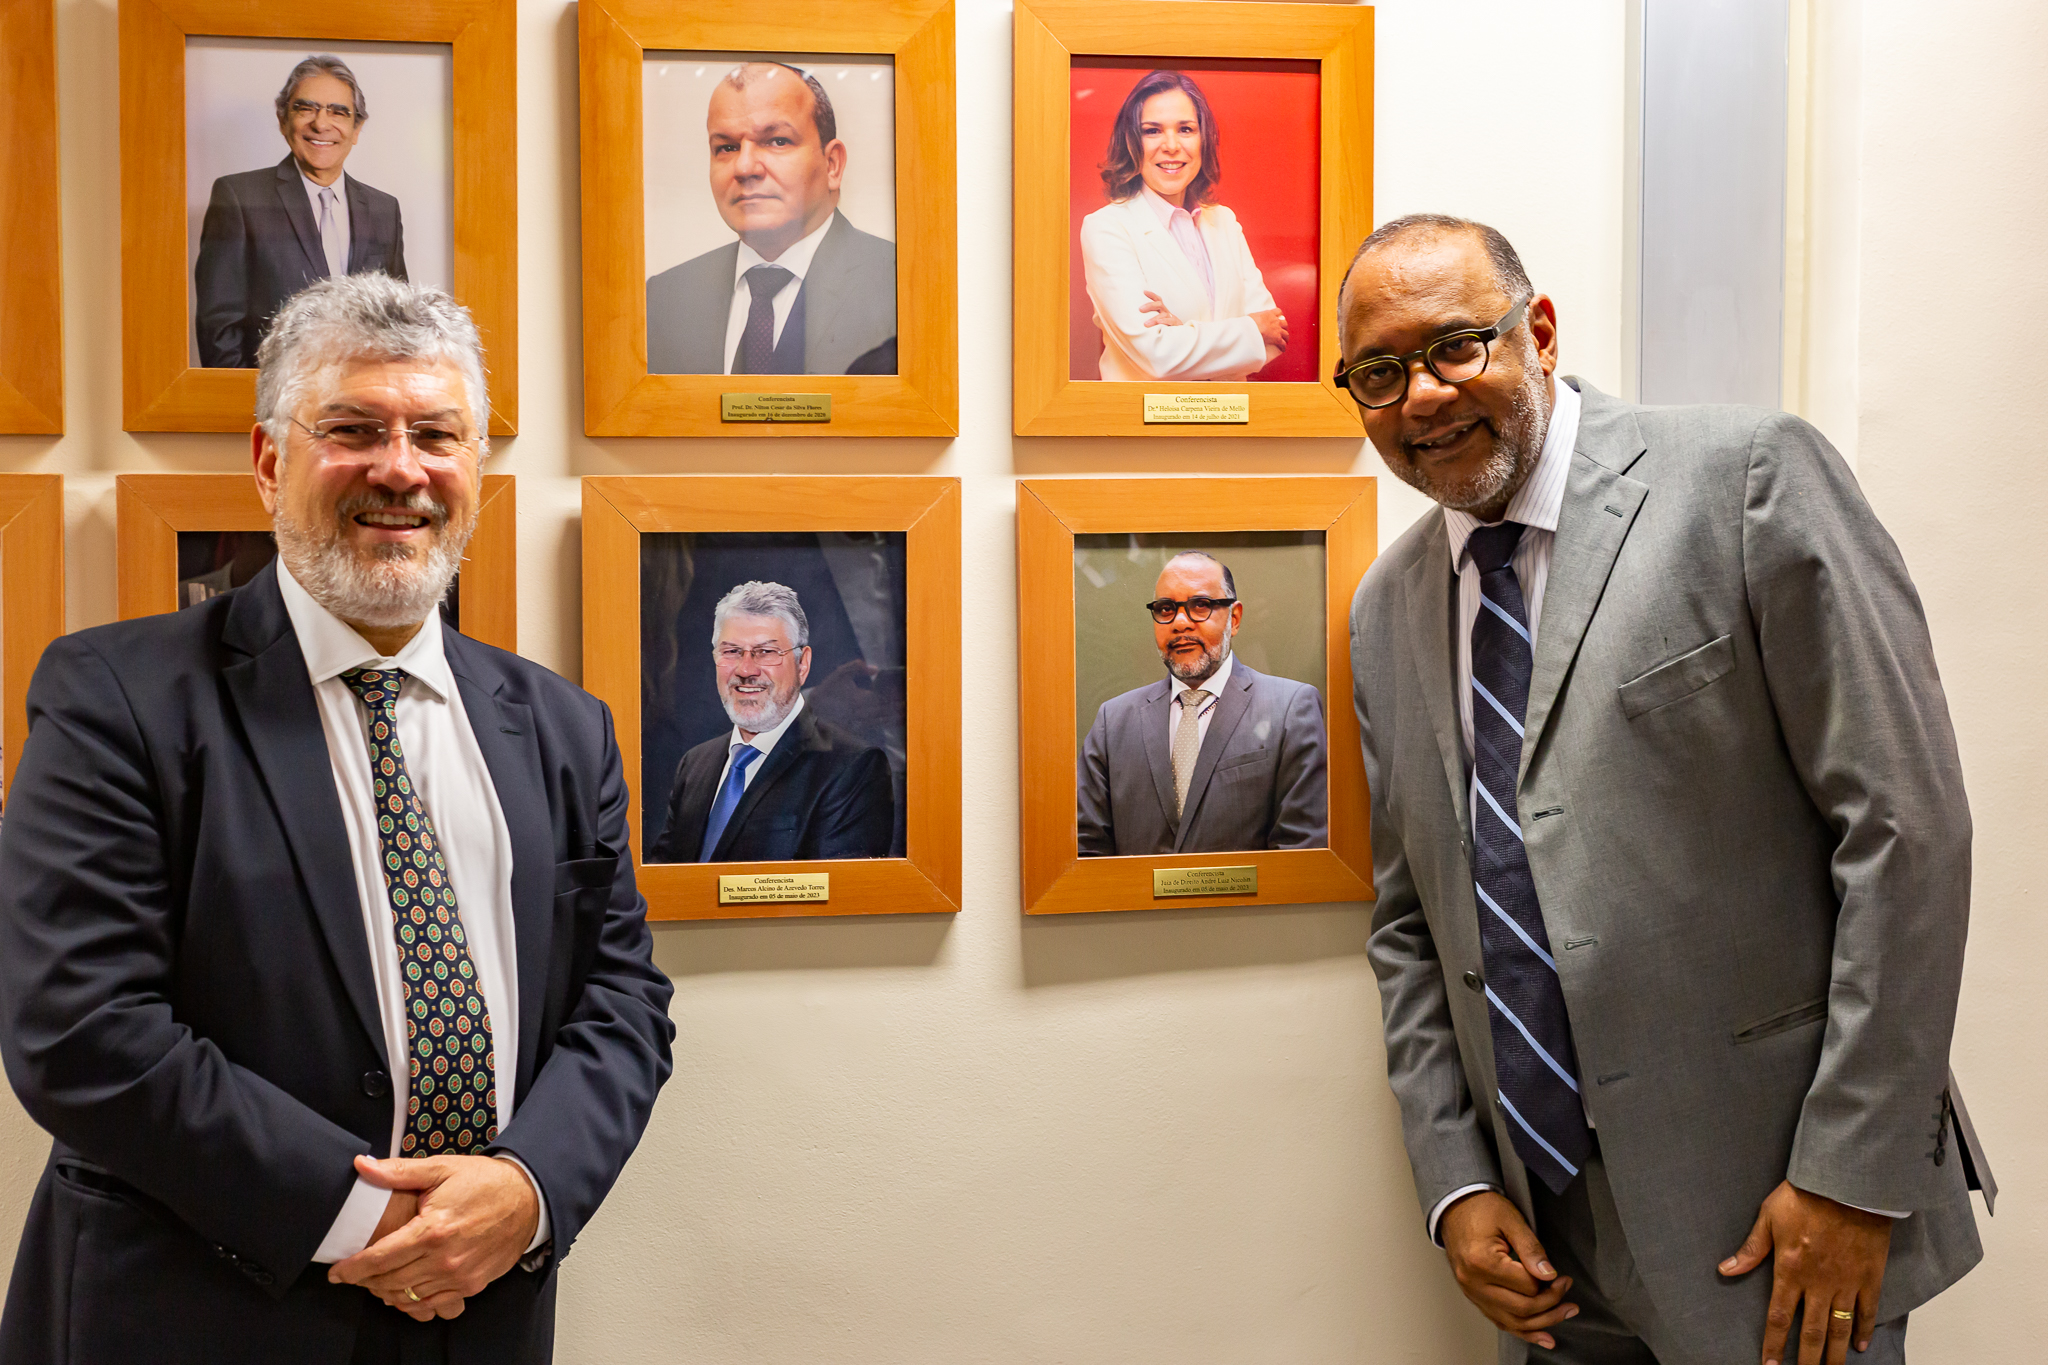 Da esquerda para direita: desembargador Marcos Alcino e juiz André Luiz Nicolitt posam ao lado de seus retratos na Galeria de Conferencistas Eméritos da Emerj